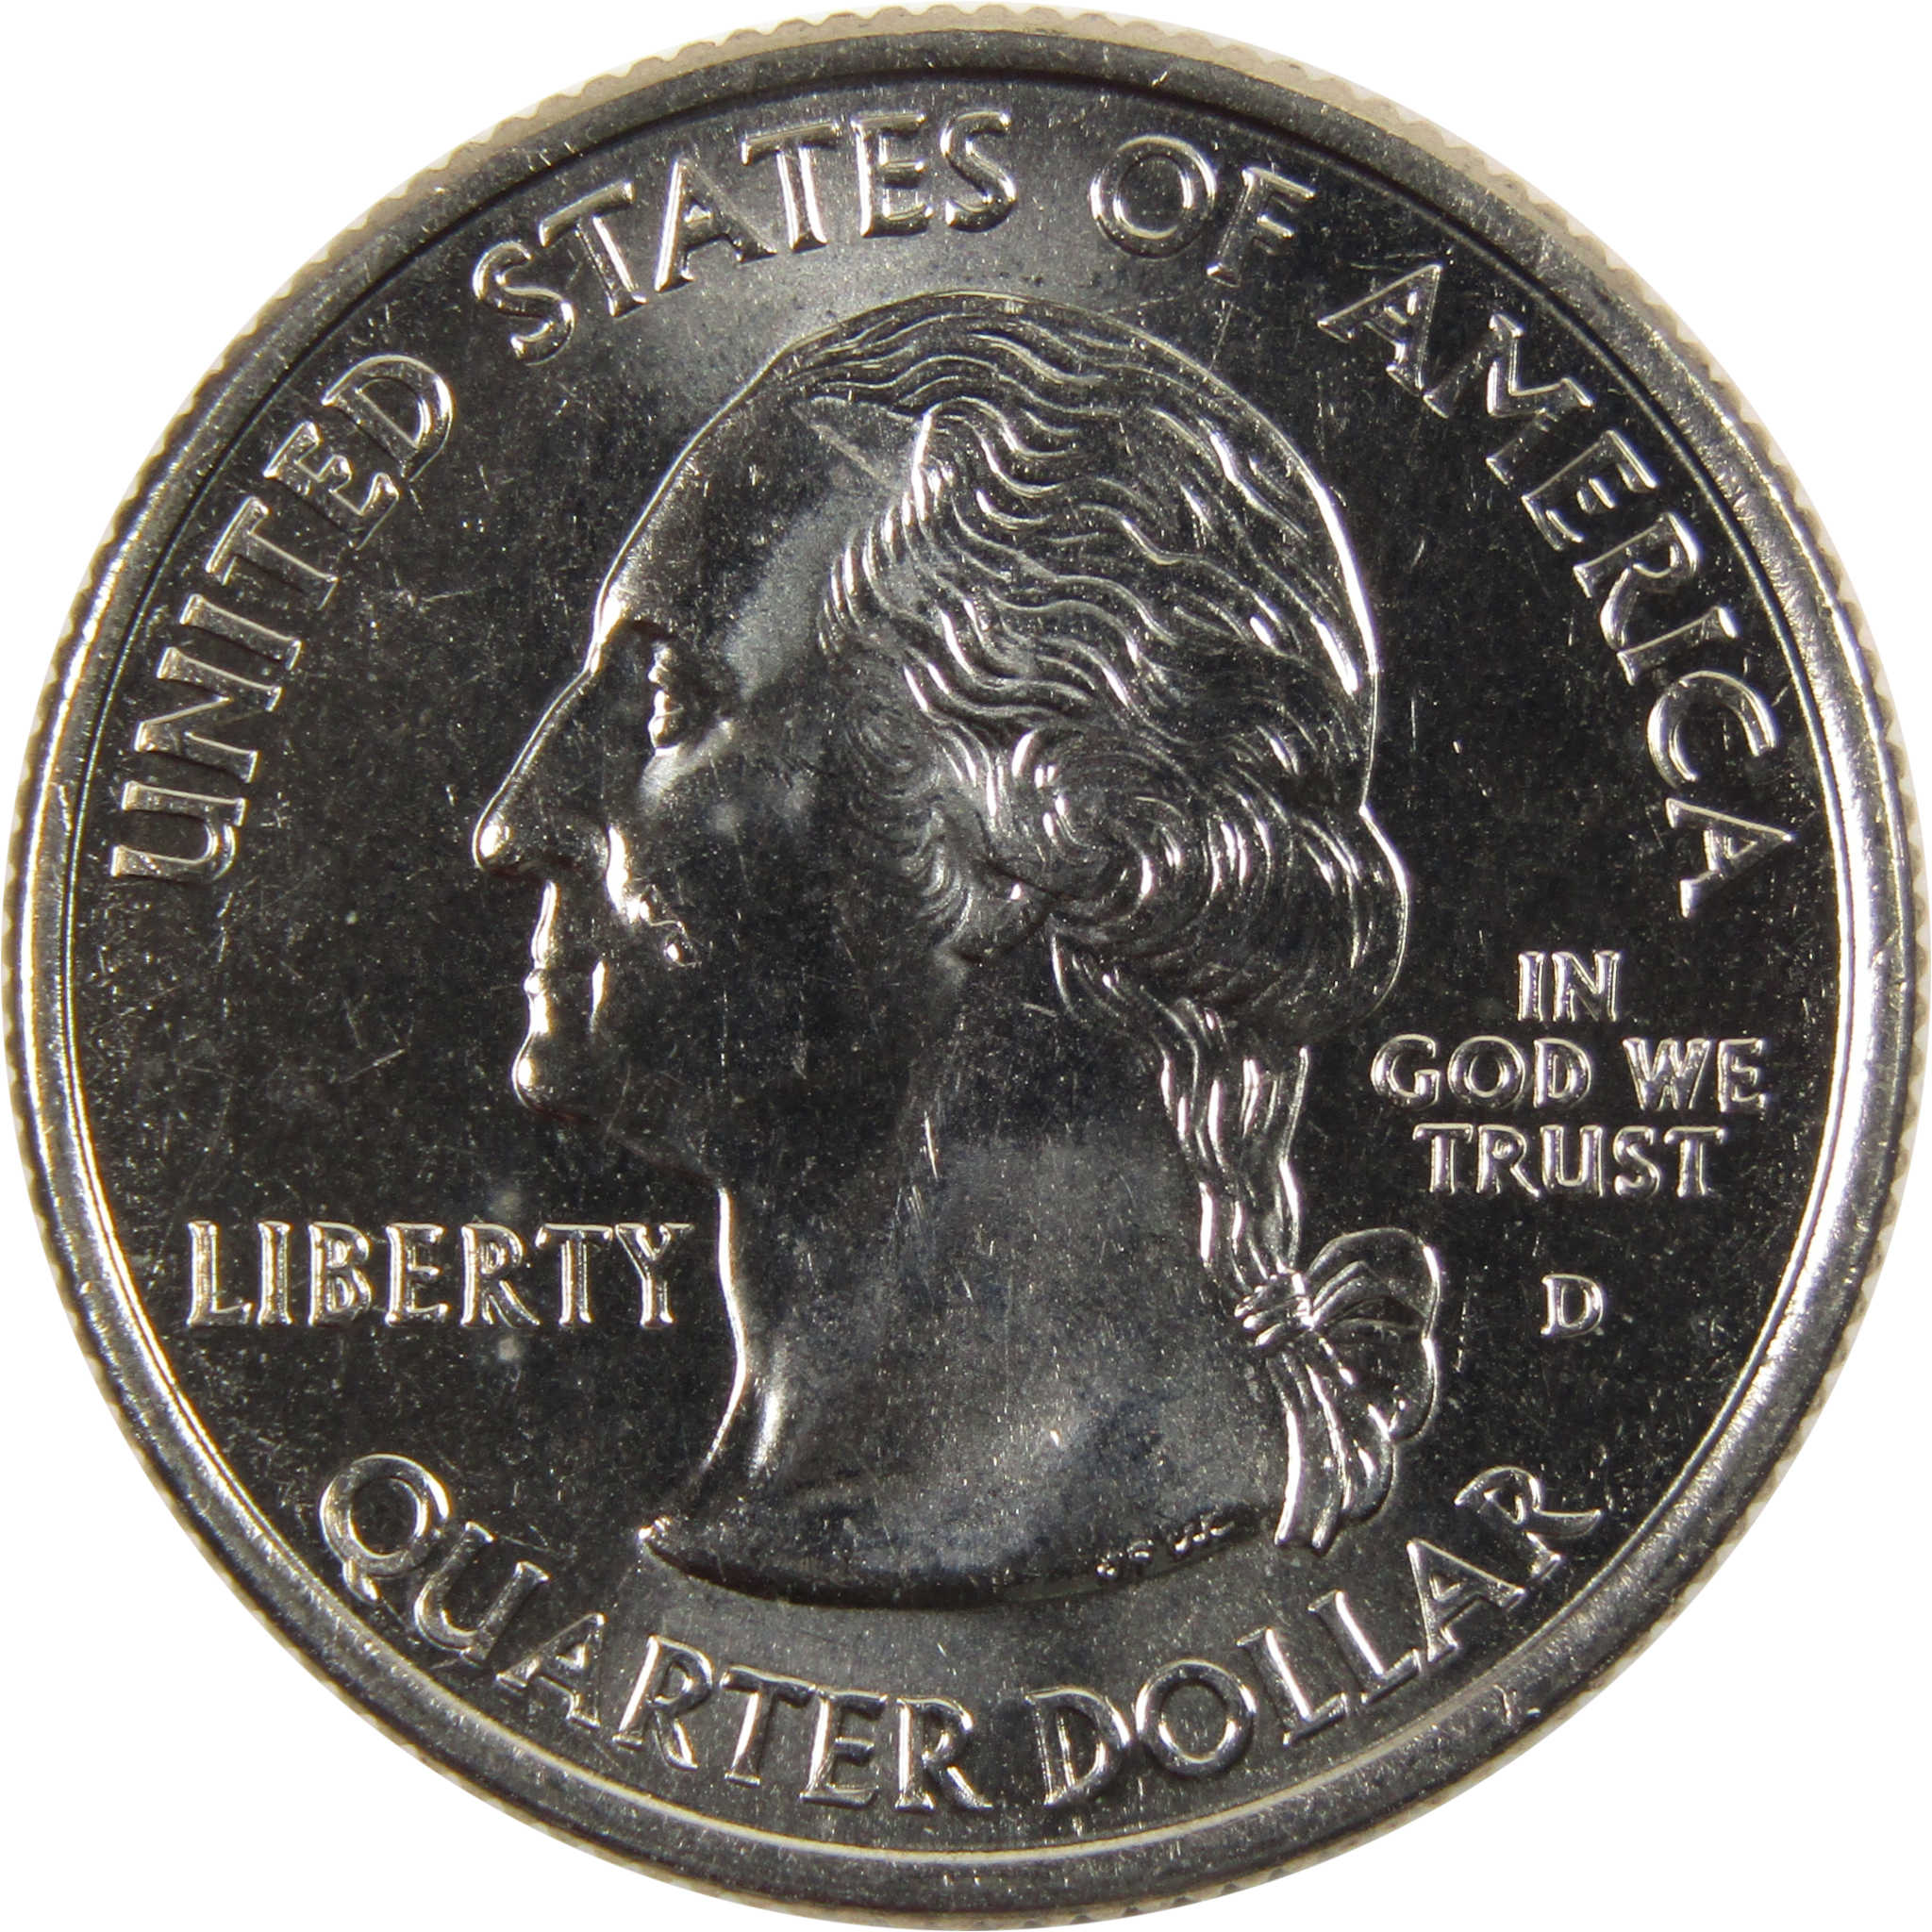 2000 D South Carolina State Quarter BU Uncirculated Clad 25c Coin